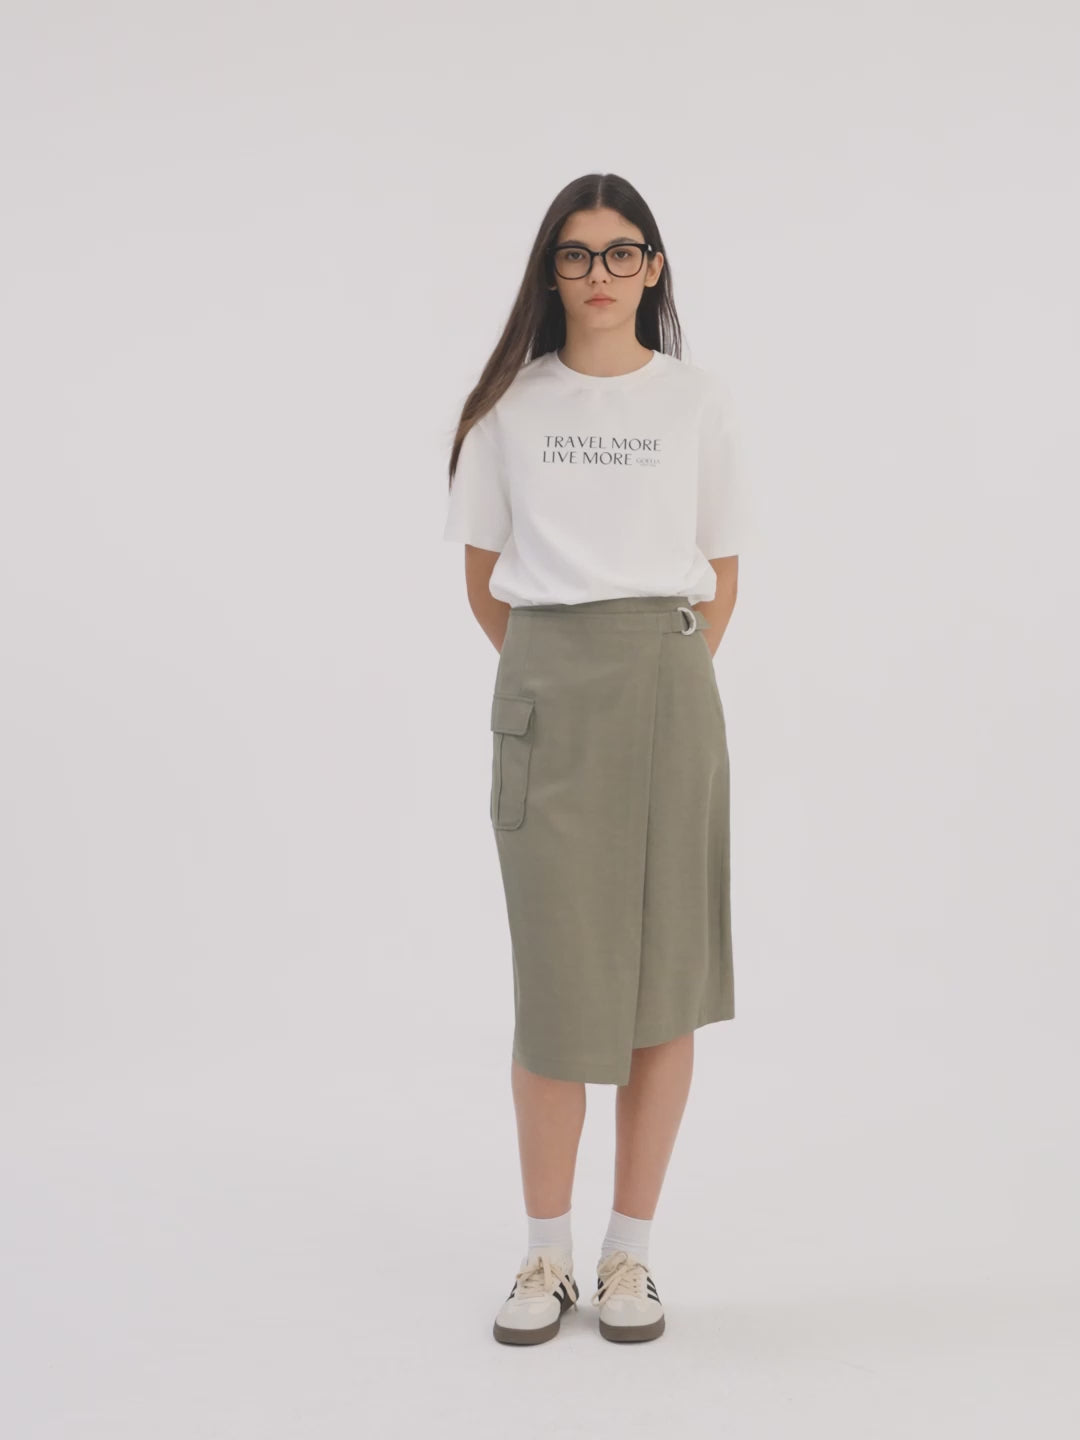 Damen-T-Shirt mit schickem Buchstaben-Print aus reiner Baumwolle